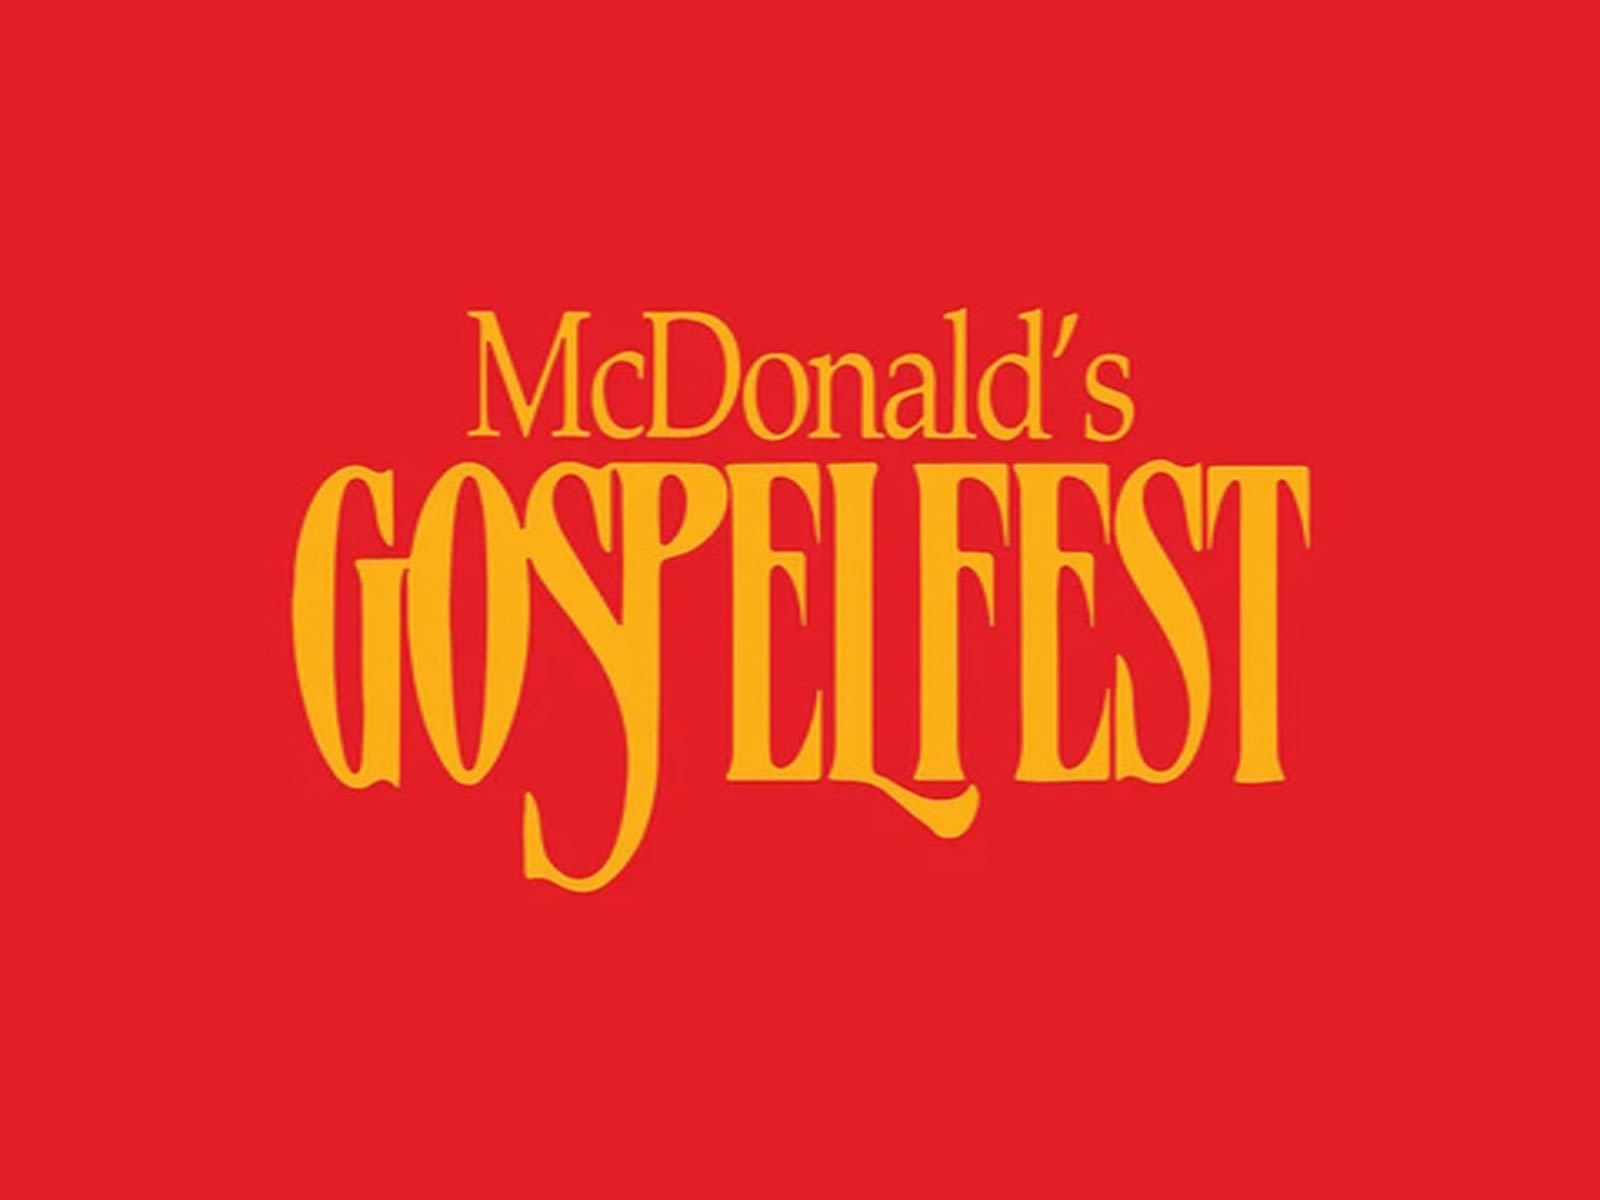 McDonald's Gospel Concert Tickets New York Theatre Guide